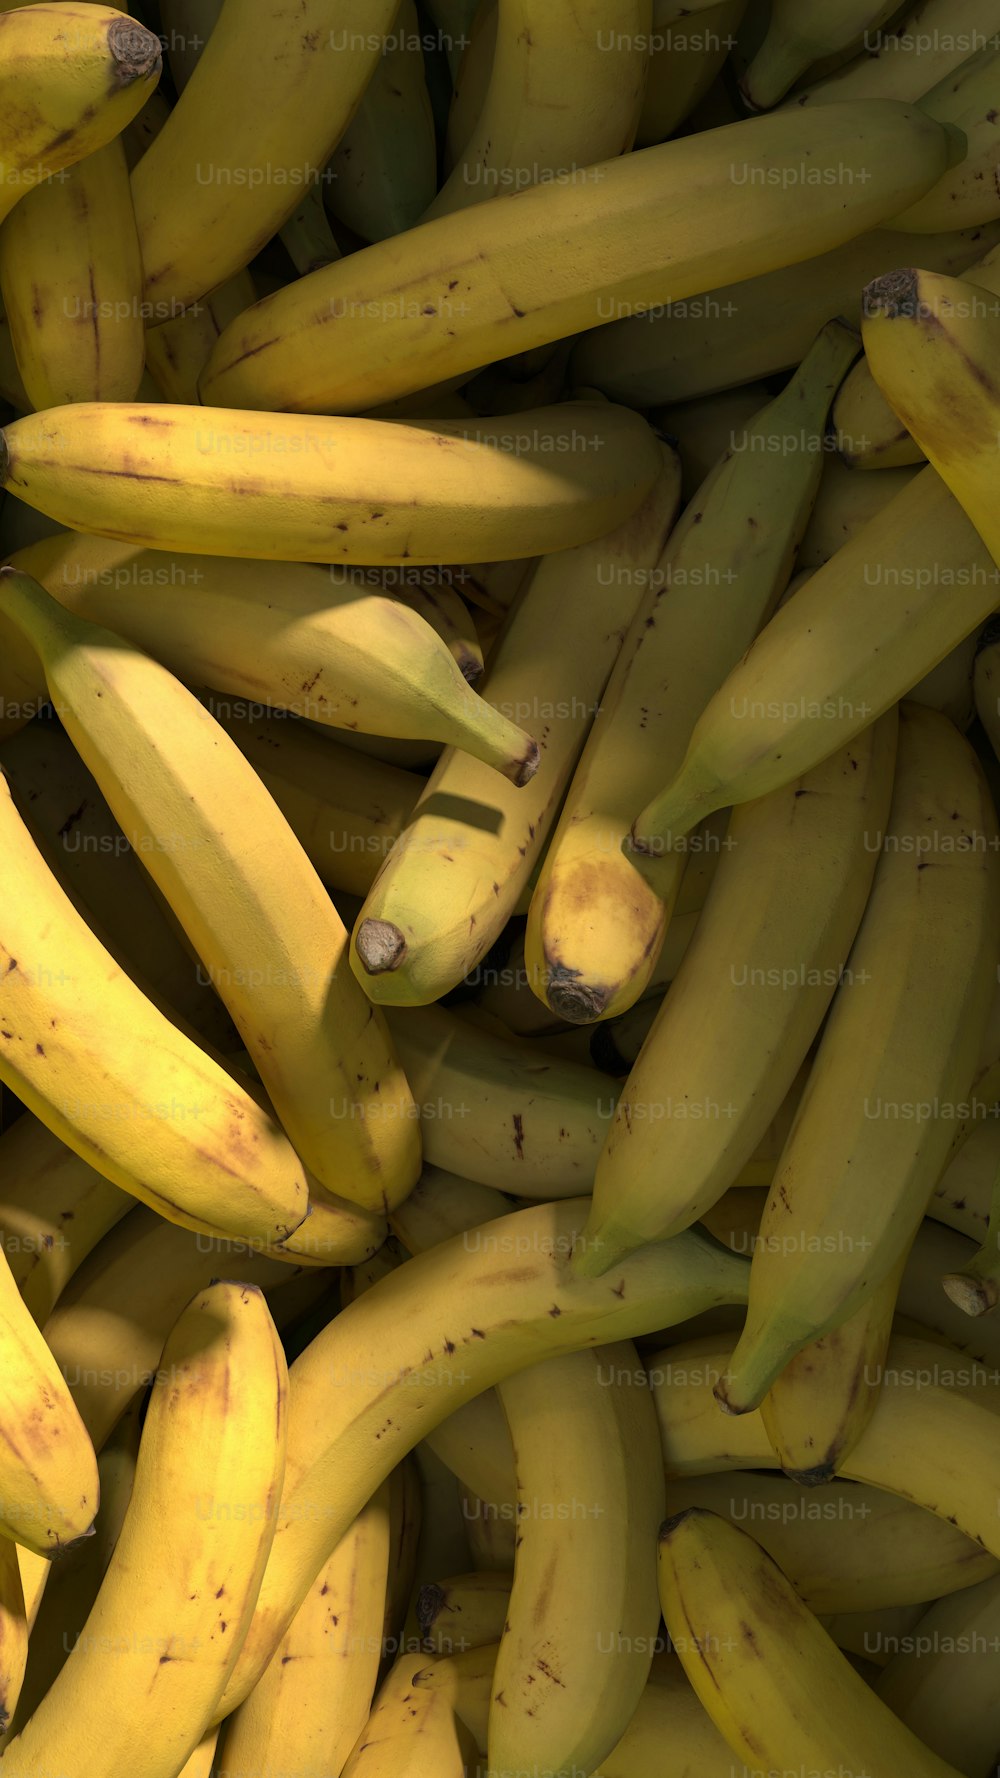 나란히 앉아있는 익은 바나나 한 묶음